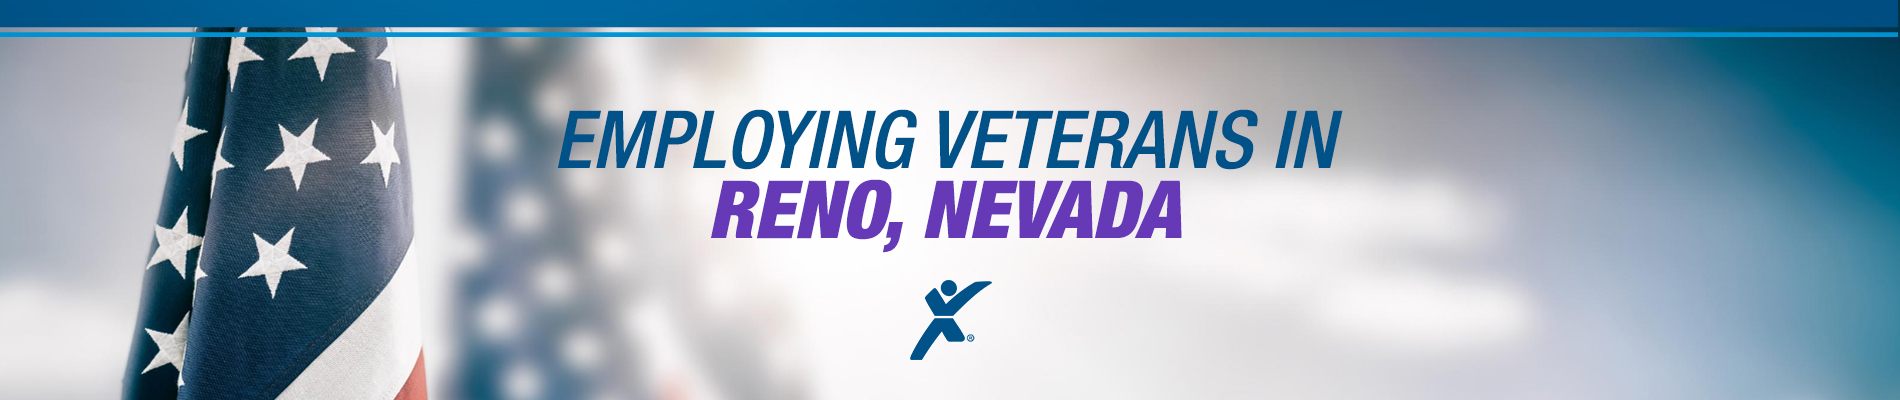 Employment Opportunities in Reno for Veterans - (775) 826-4442